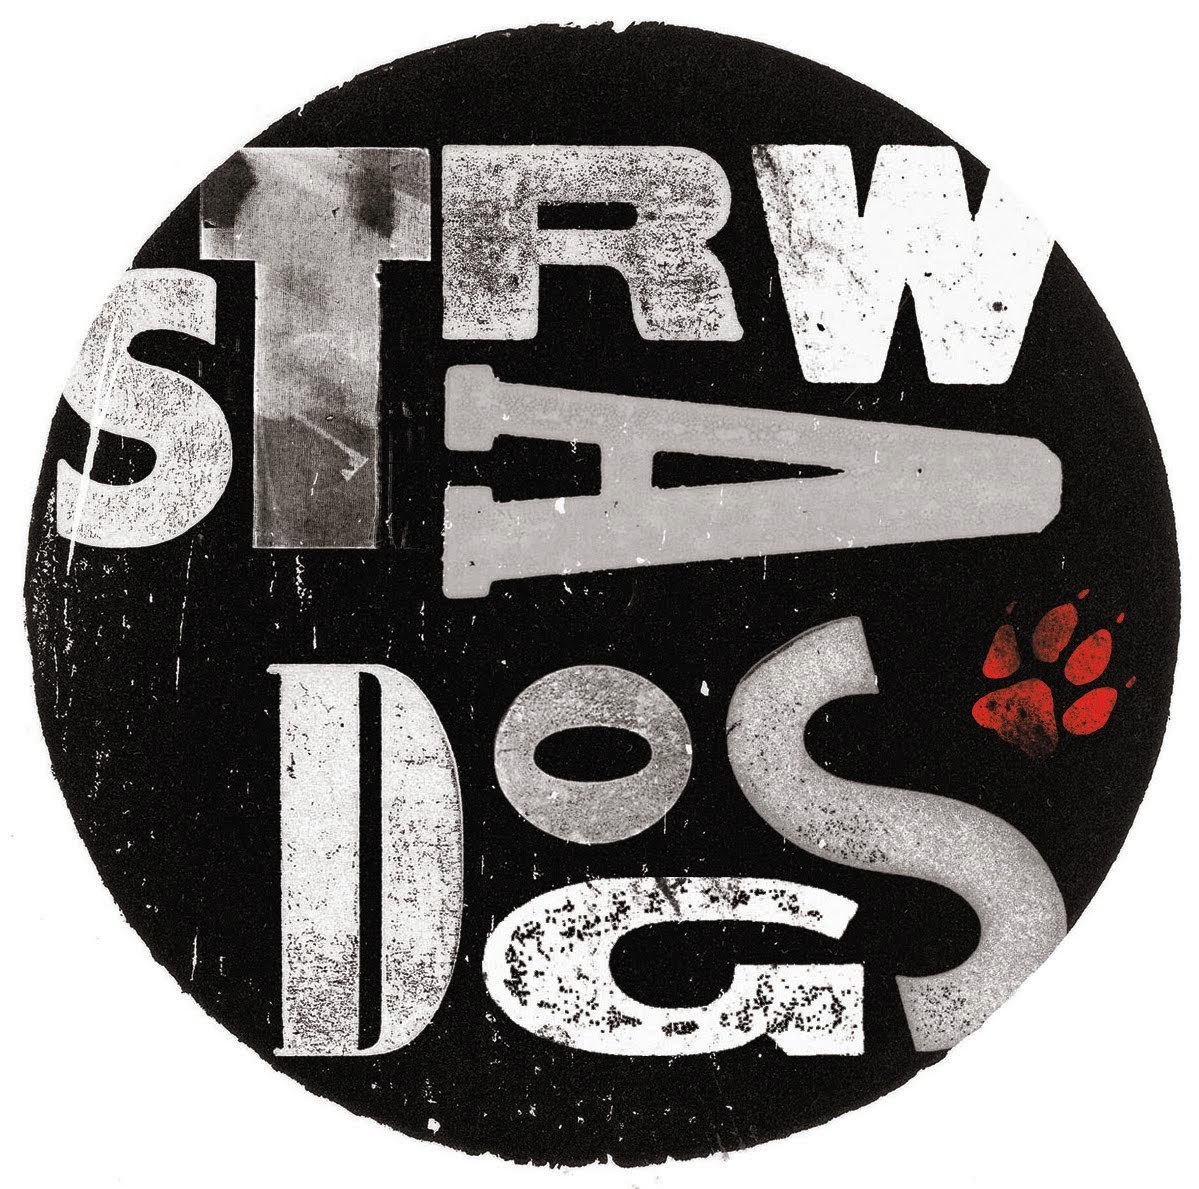 Straw Dogs Magazine